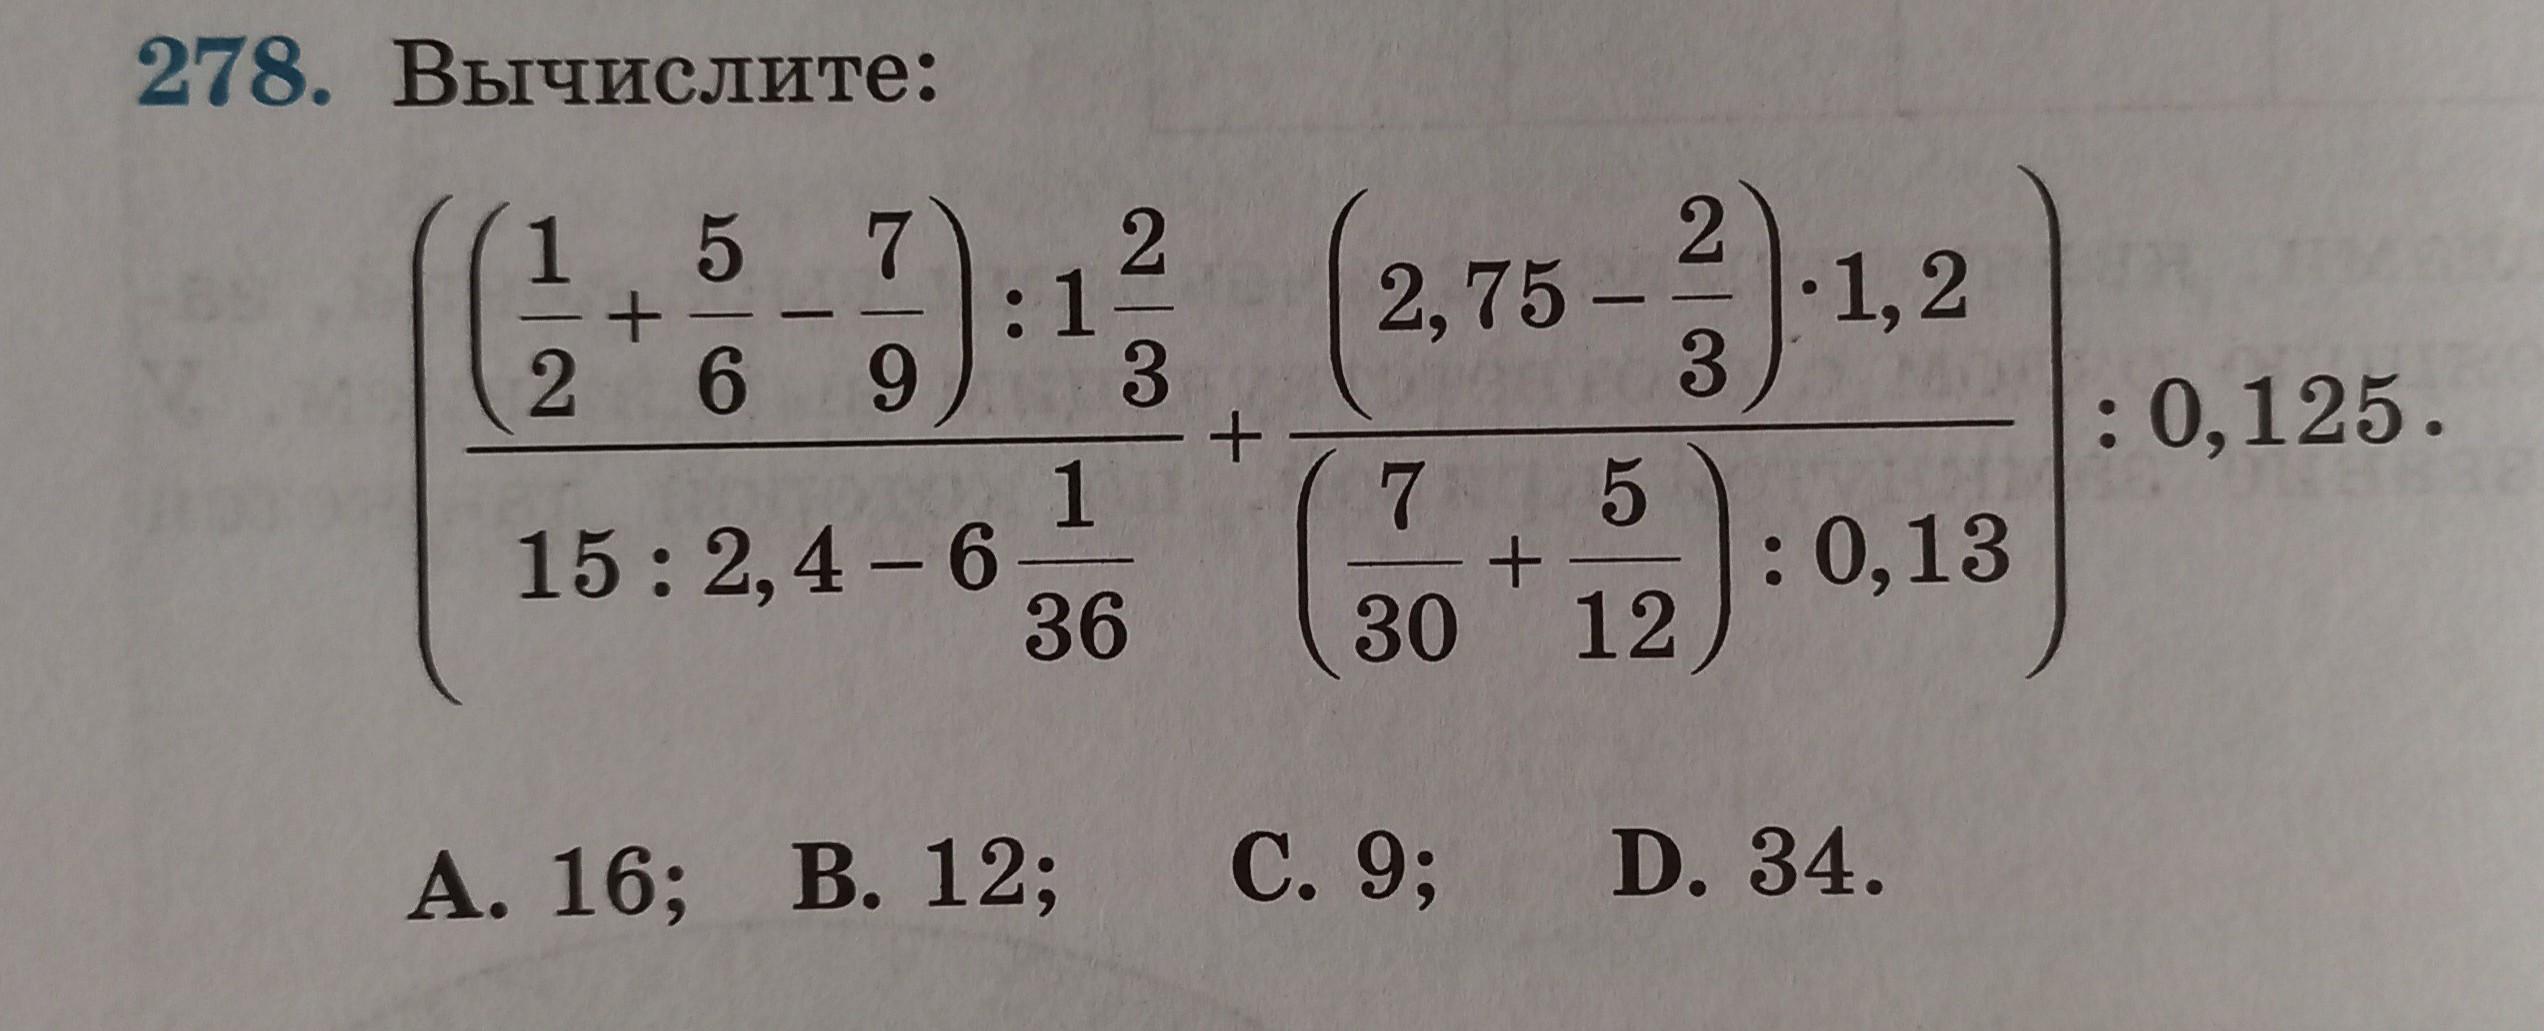 Вычислите 1 43 3 5. 1. Вычислите:. Вычислить (1,036)^3.